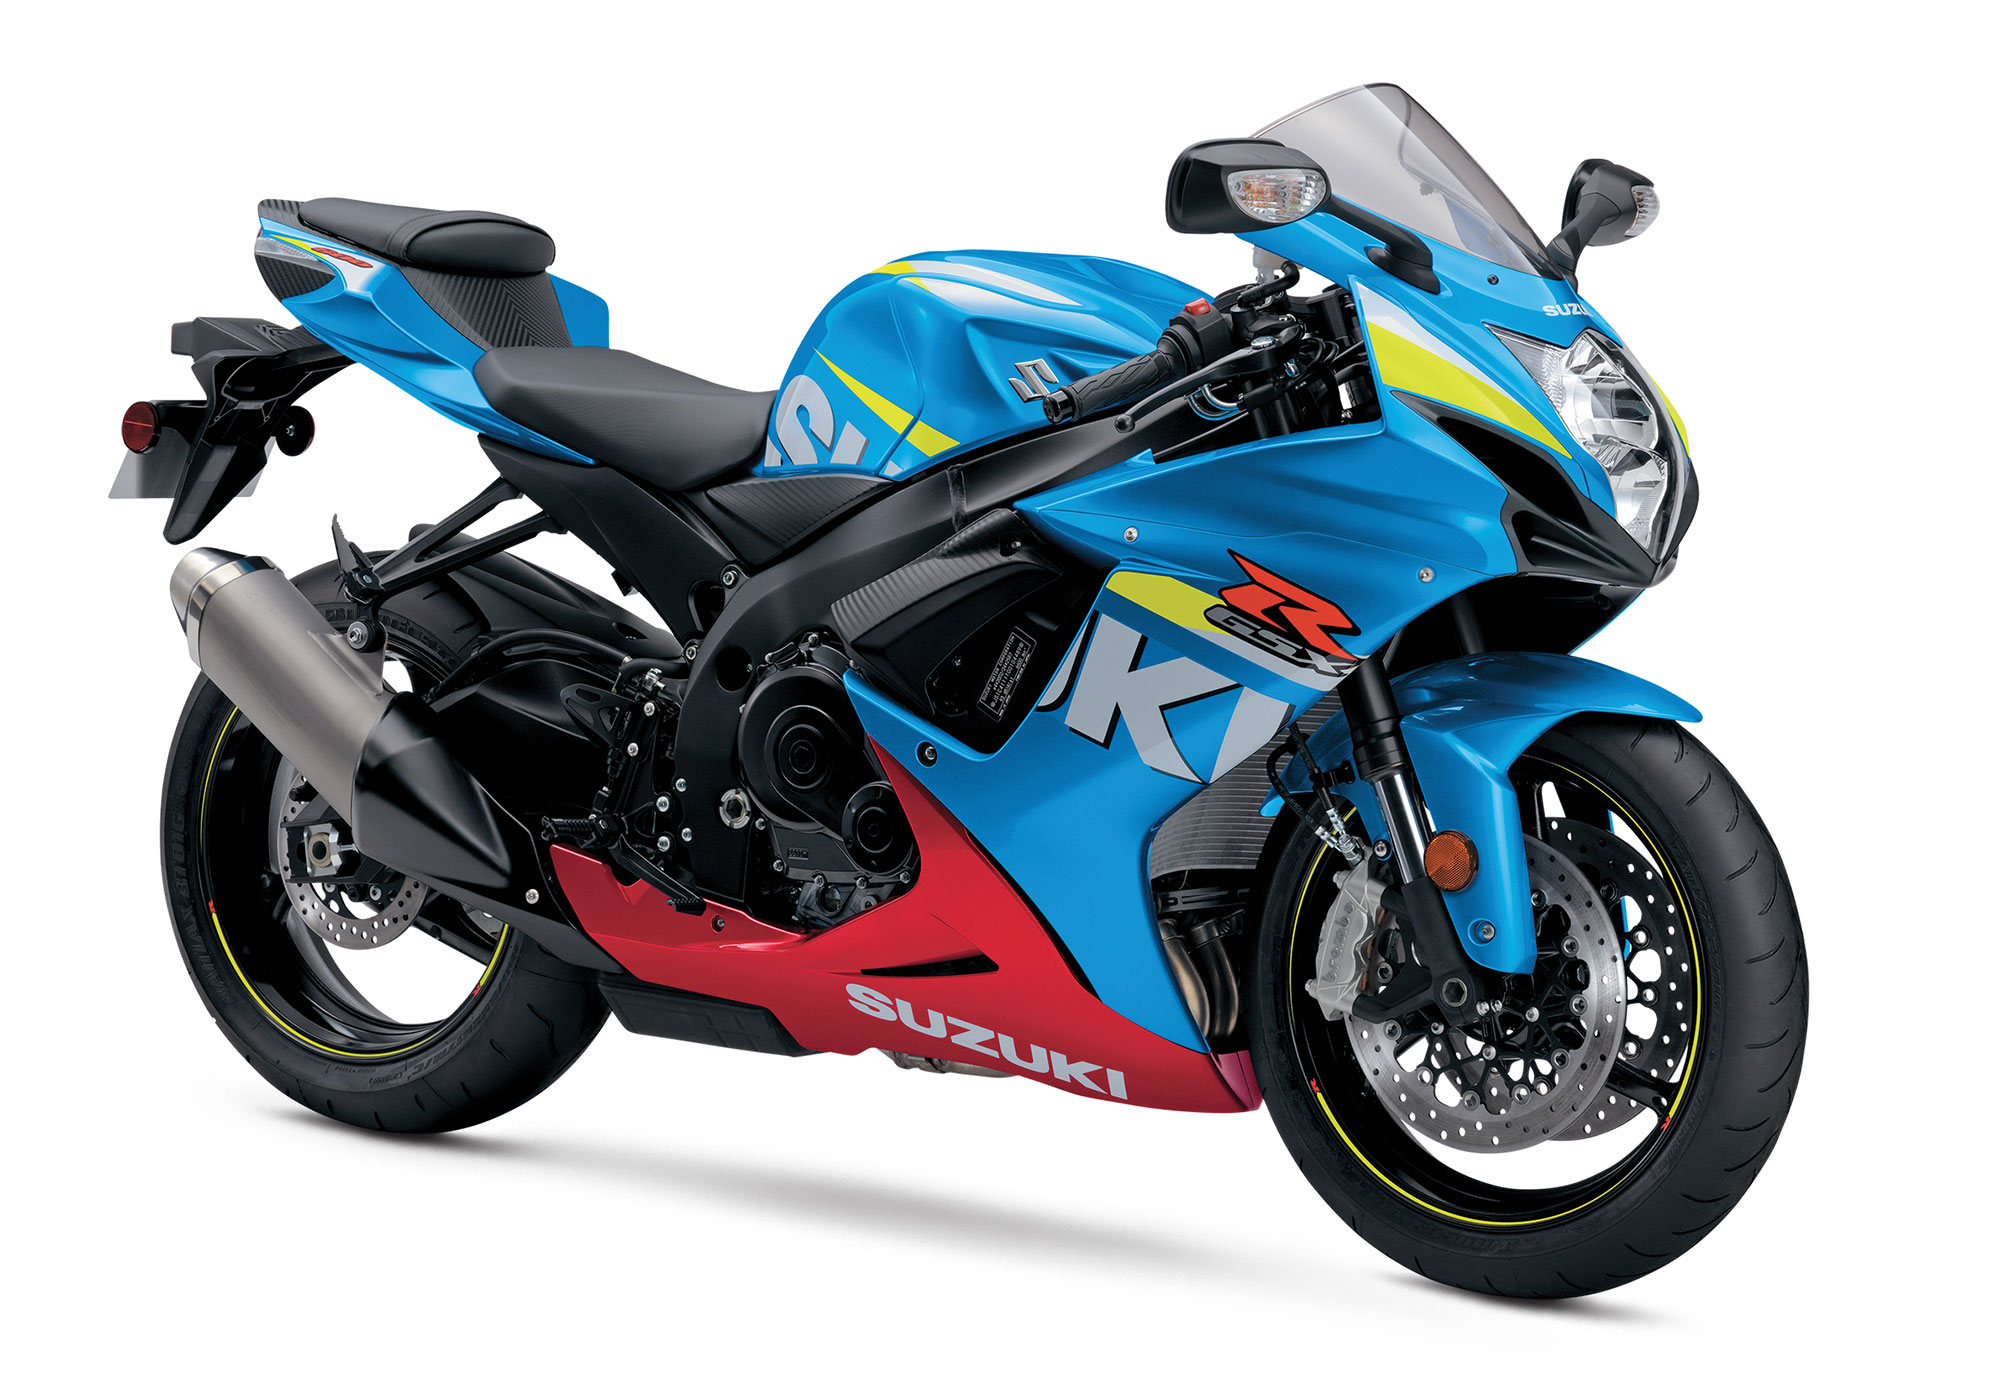 Alleged Kawasaki Ninja R2 patents surfaces - Motorcycle news 